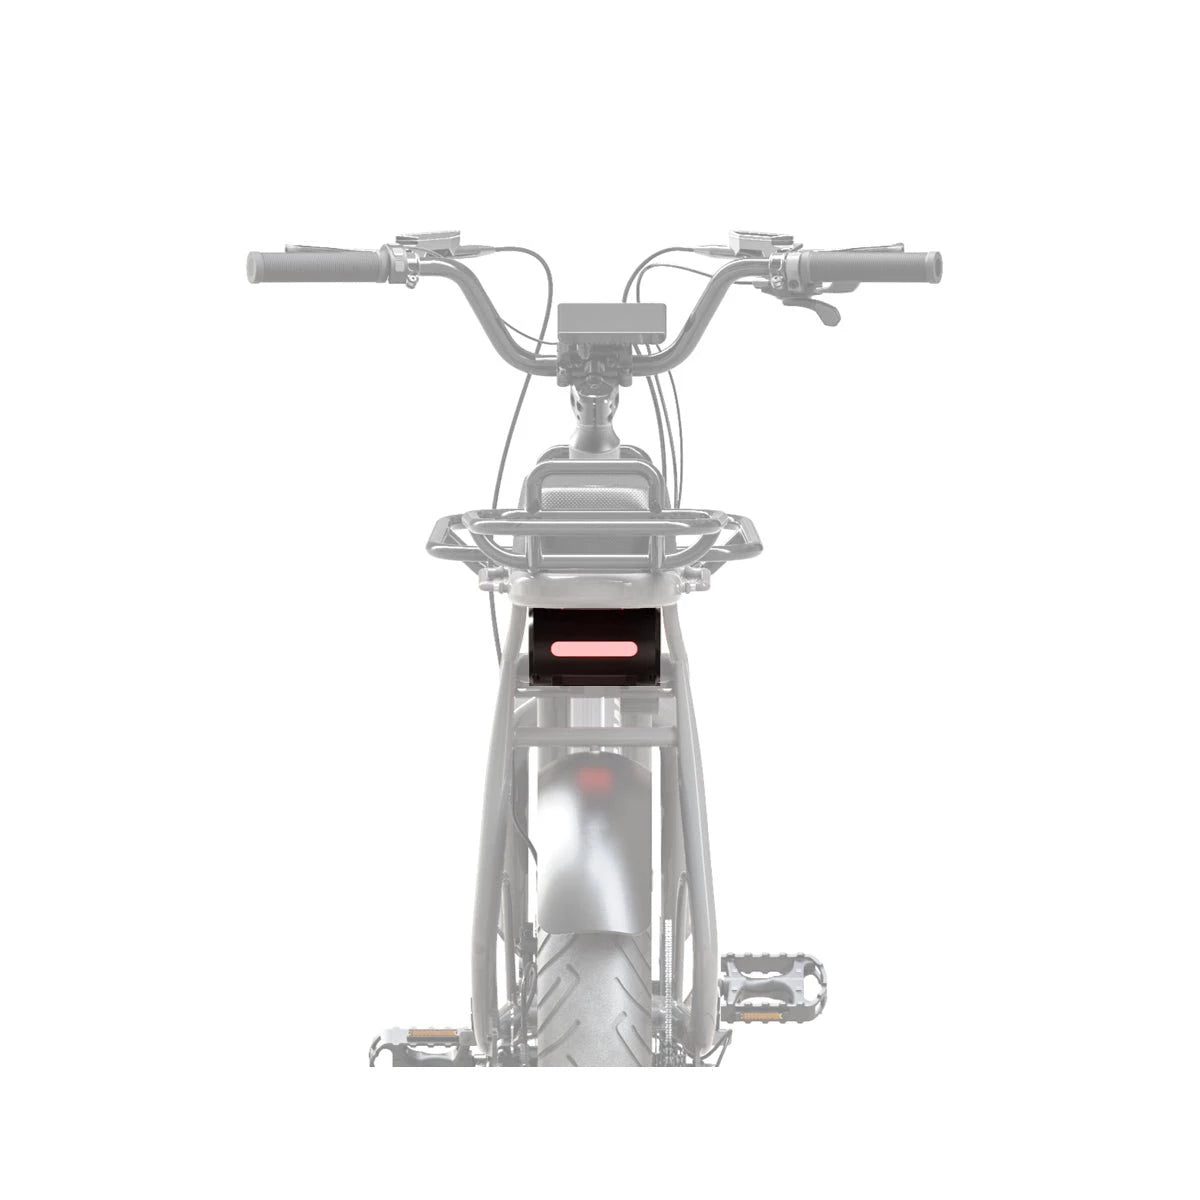 Batterie standard 614 Wh pour vélo électrique Yuvy – Elwing